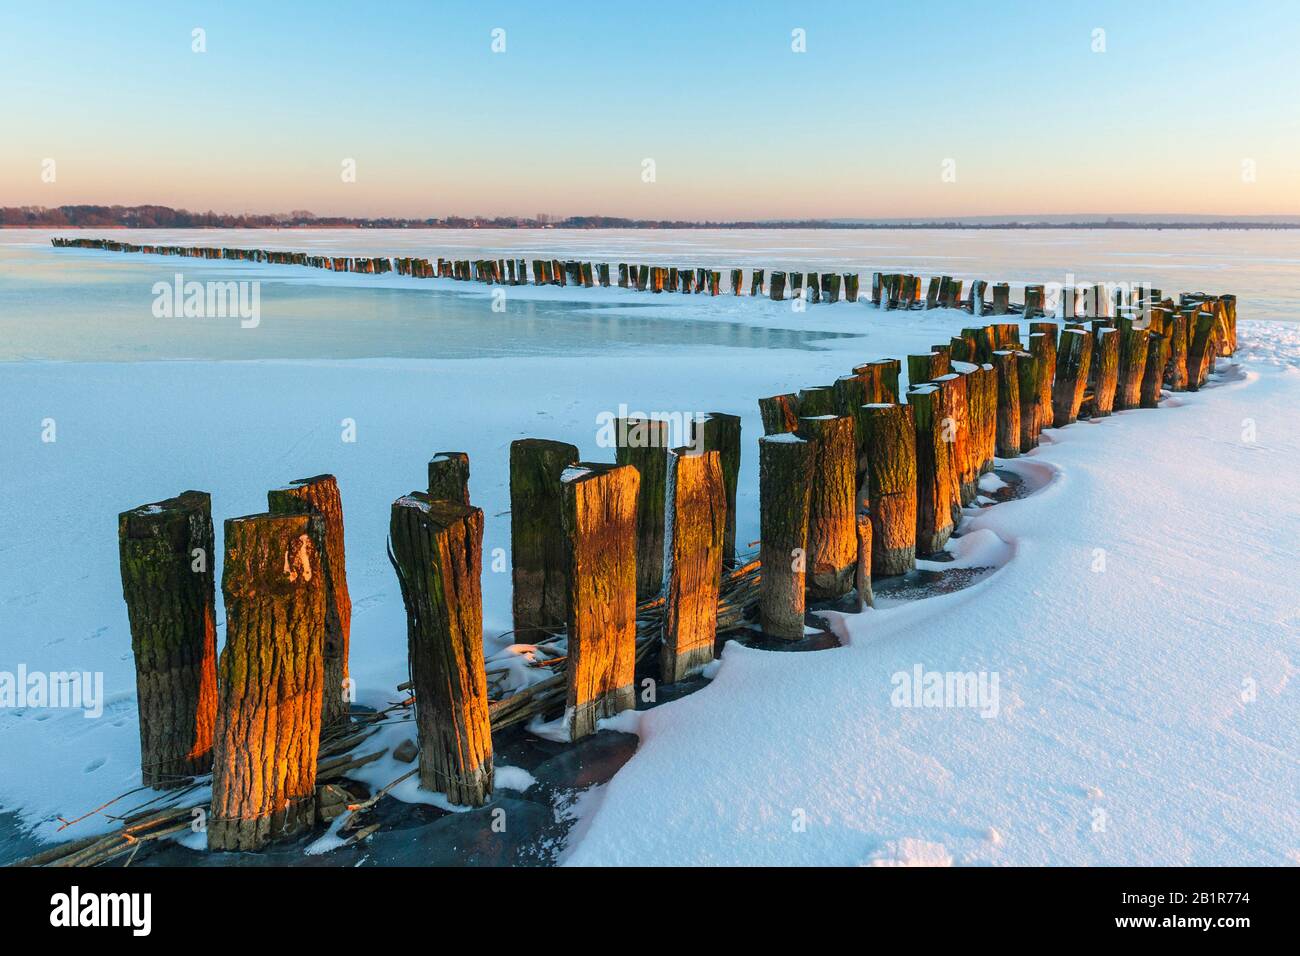 Postes dans le lac Duemmer au coucher du soleil hivernal, Allemagne, Basse-Saxe, Duemmerlohhausen Banque D'Images